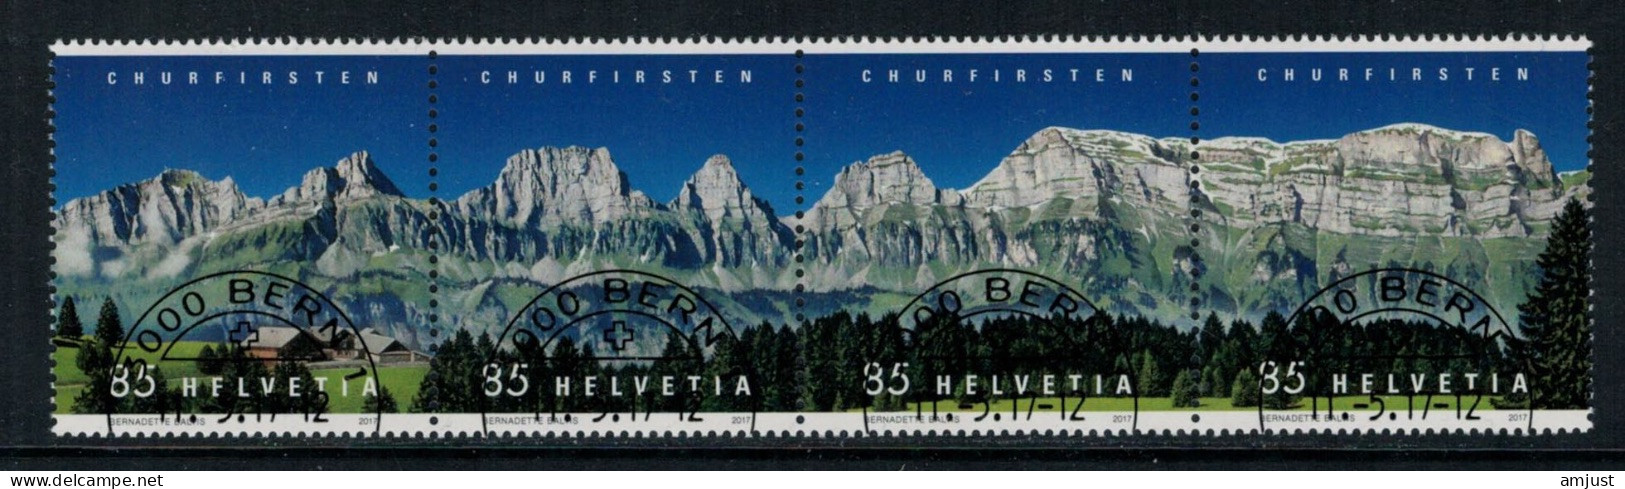 Suisse /Schweiz/Svizzera/Switzerland // 2017 // Churfirsten  Oblitéré No. 1631-1634 - Gebraucht